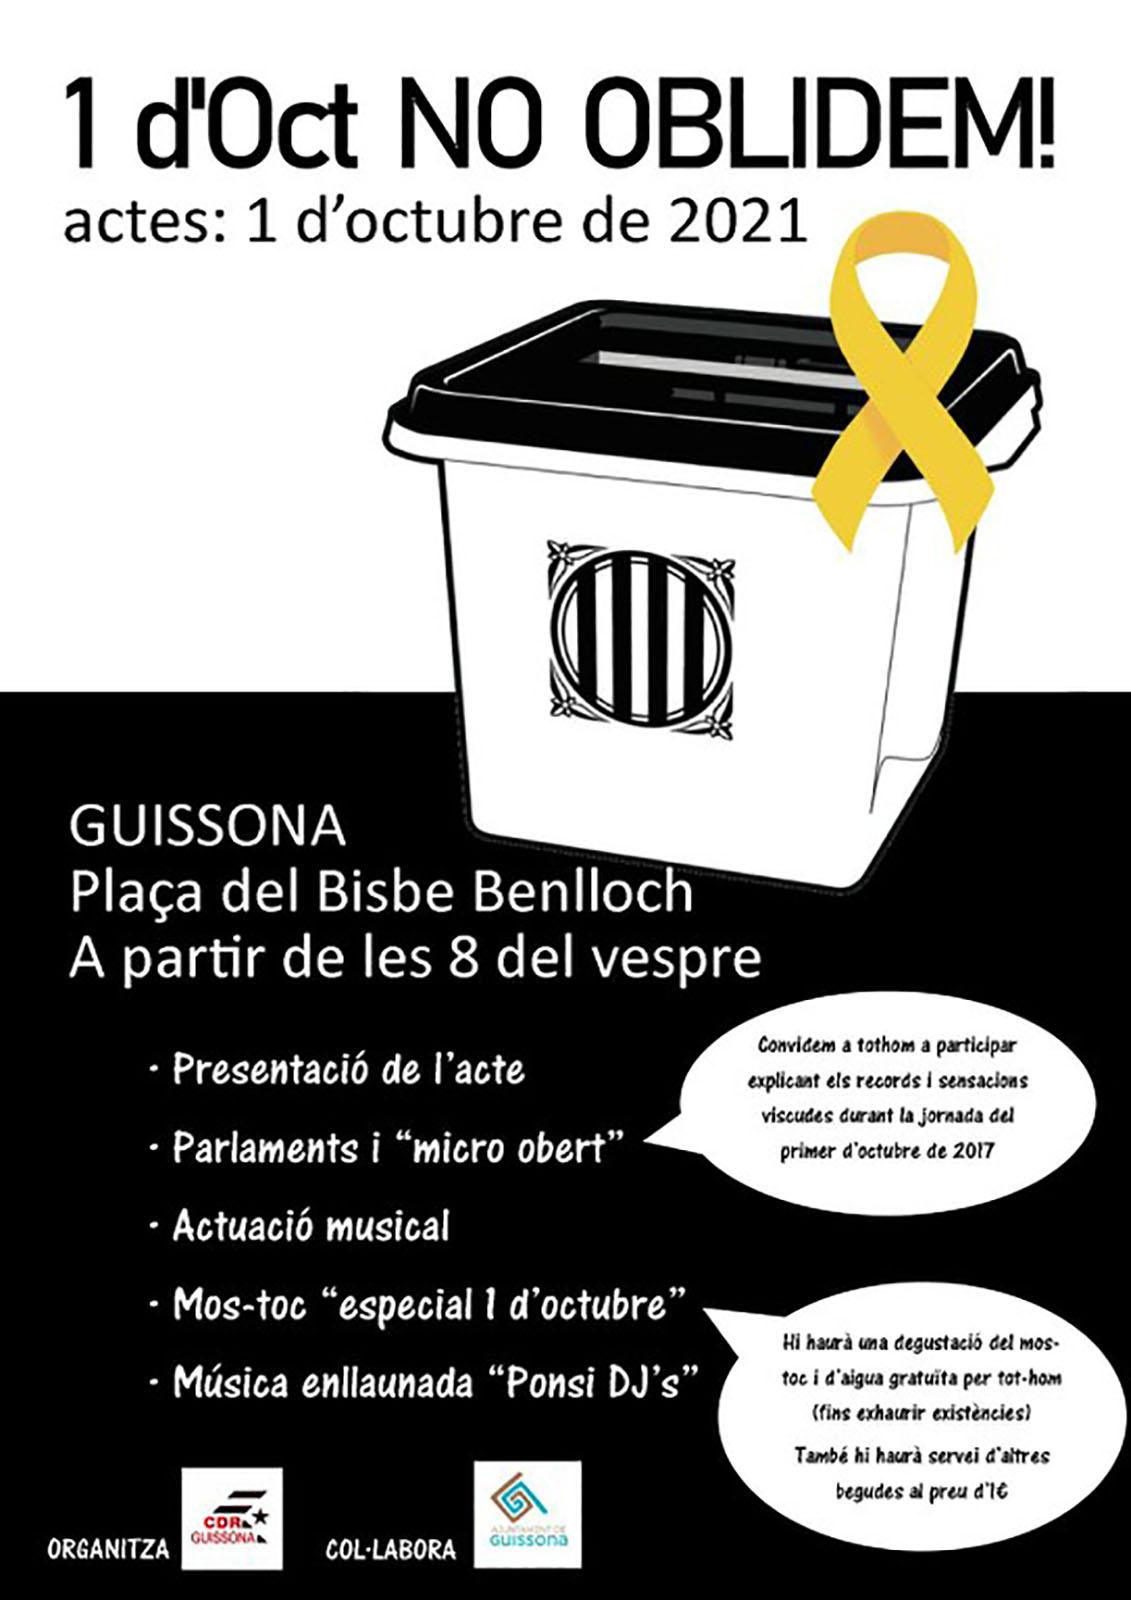 Actes commemoratius de l'1 d'octubre a Guissona